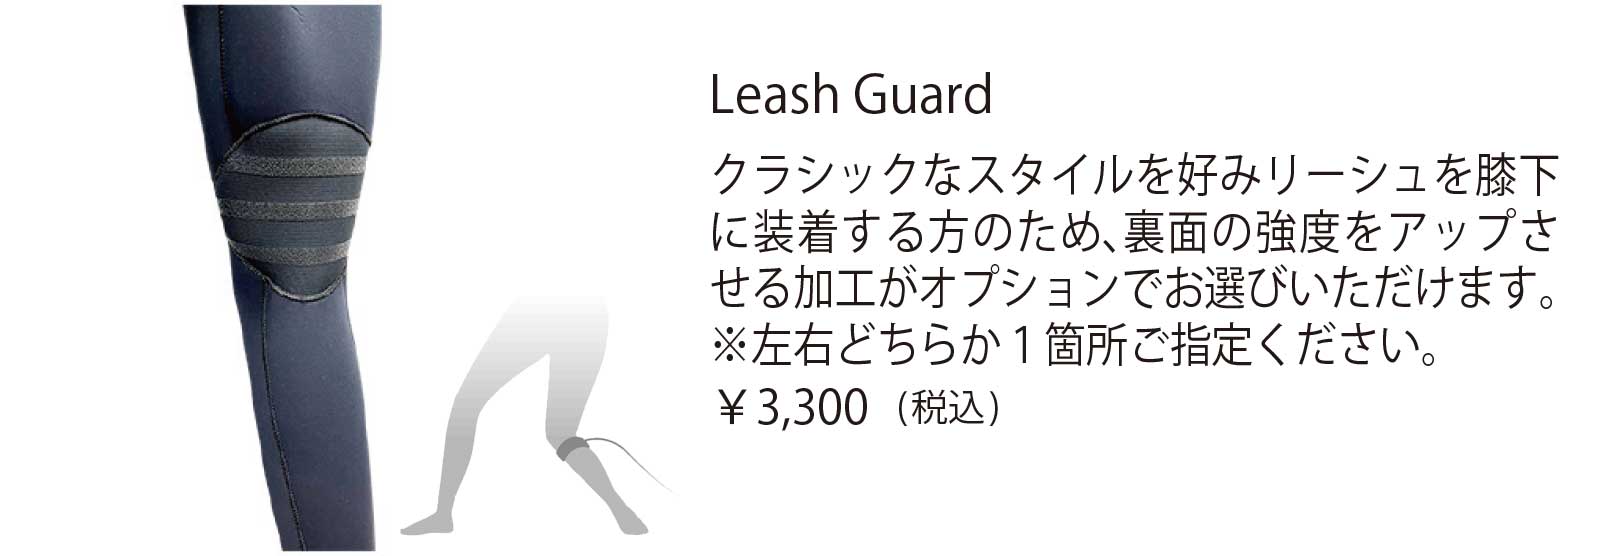 Leash Guard クラシックなスタイルを好みリーシュを膝下 に装着する方のため、裏面の強度をアップさ せる加工がオプションでお選びいただけます。 ※左右どちらか1箇所ご指定ください。